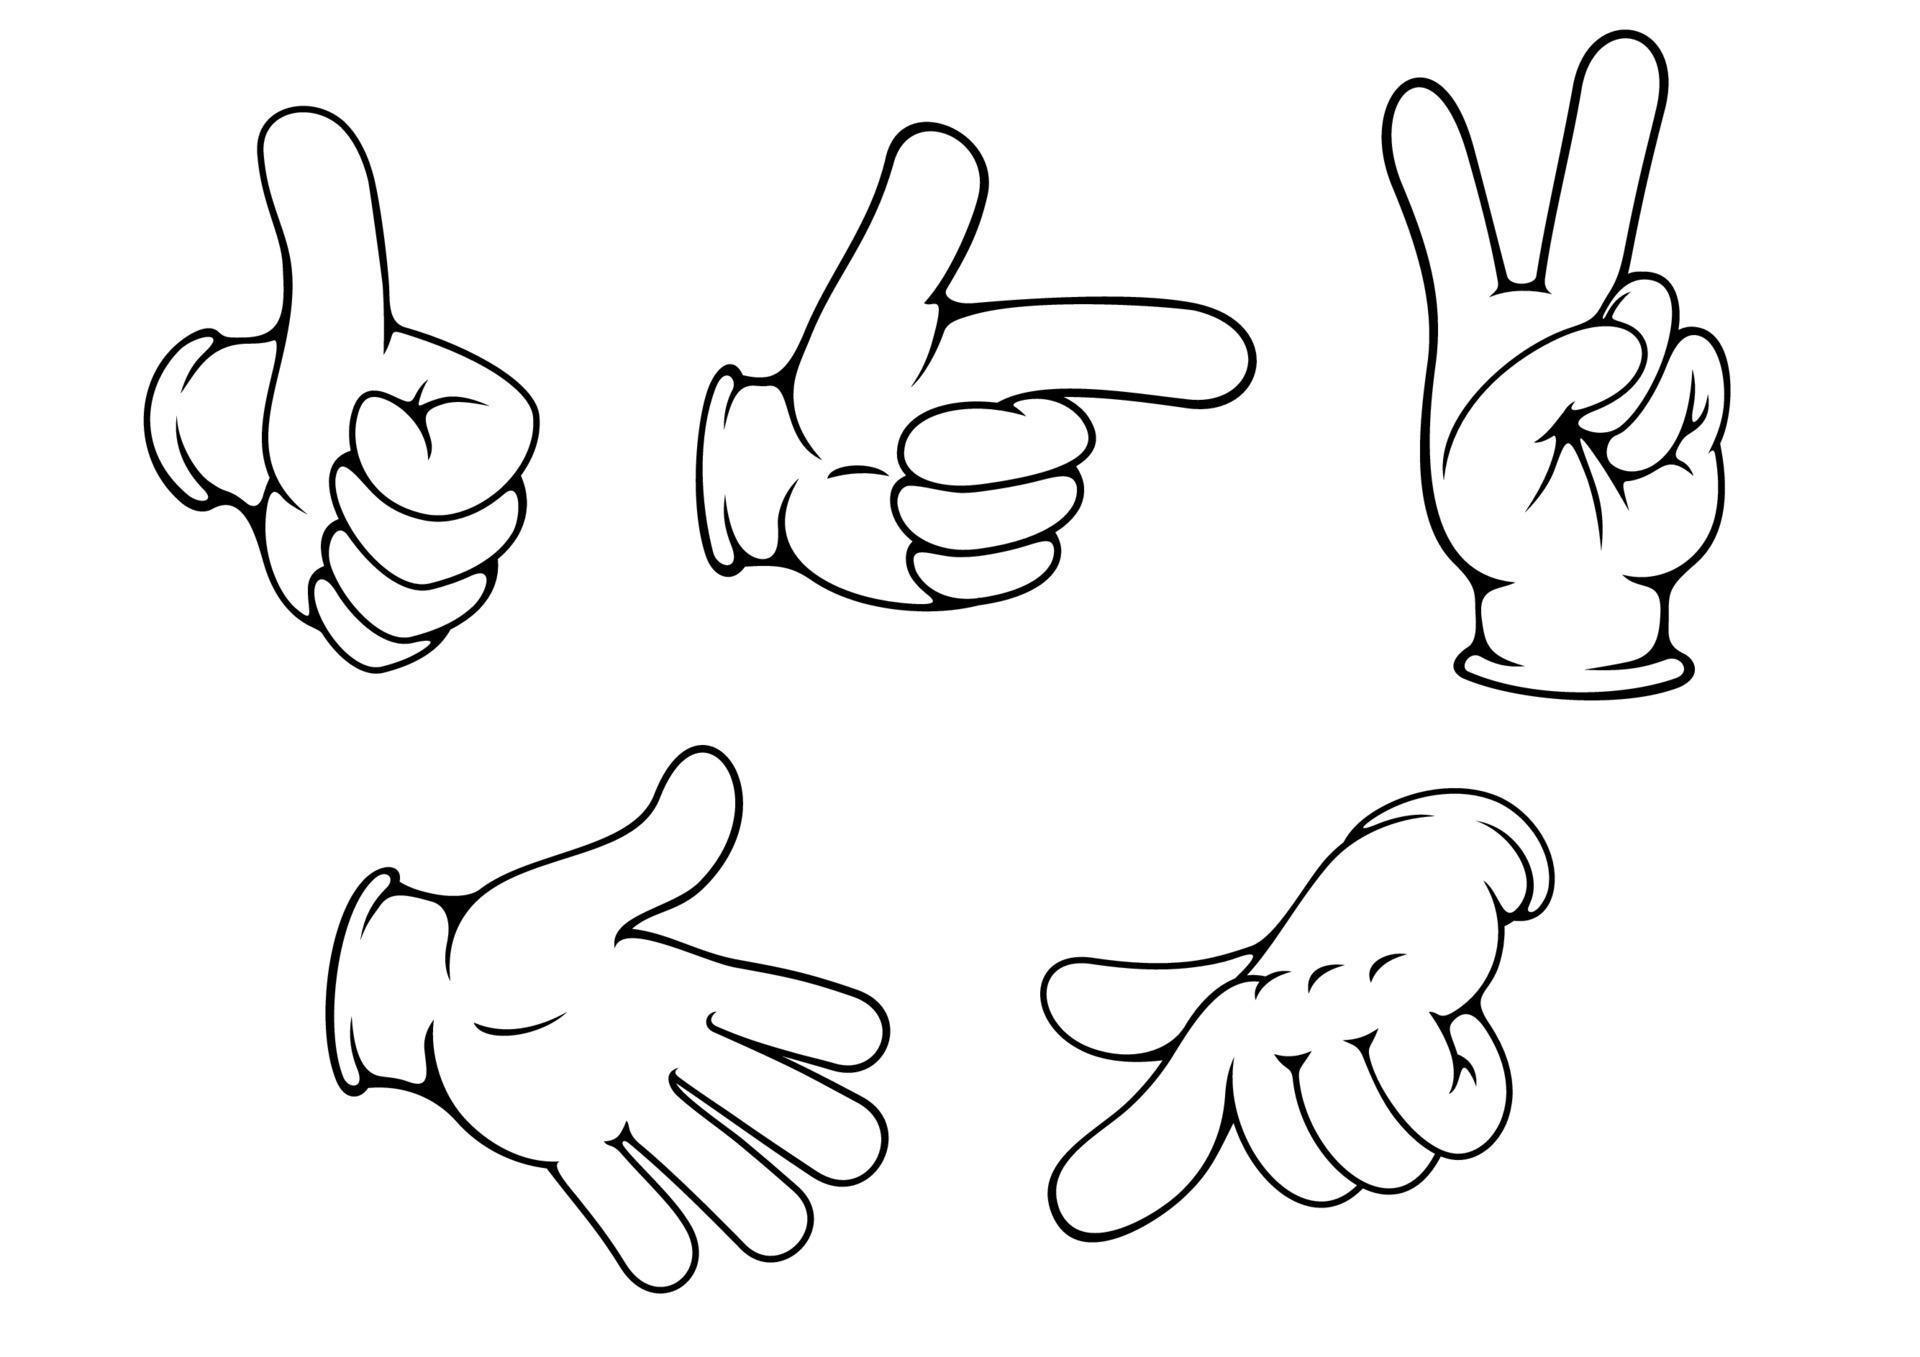 Set of positive hands gestures 11214870 Vector Art at Vecteezy